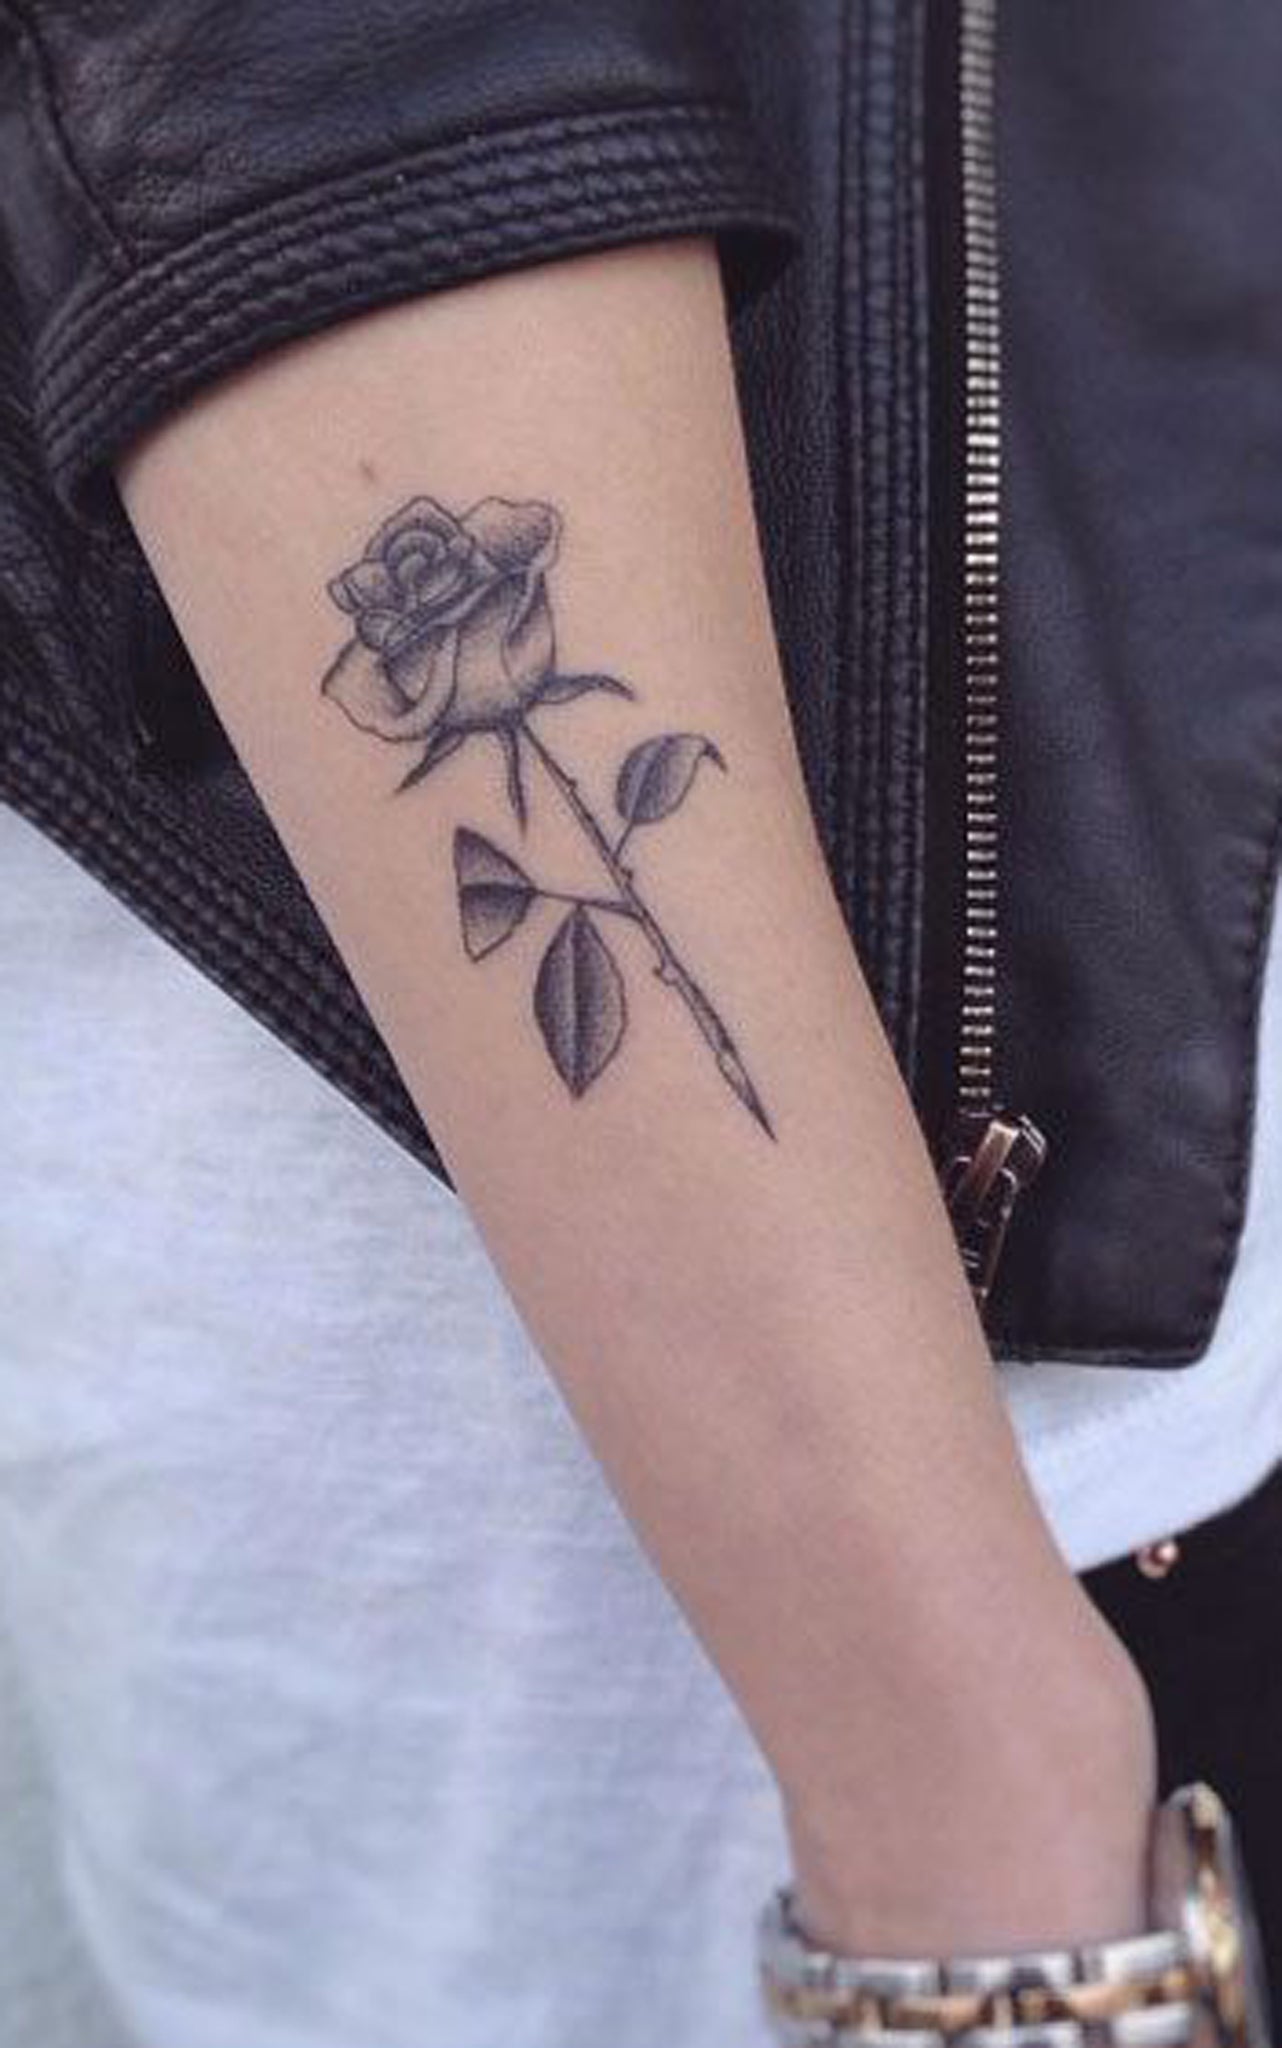 Black & White Realistic Rose Outer Forearm Tattoo Ideas for Women -   rose ideas de tatuaje de antebrazo exterior para mujeres chicas - www.MyBodiArt.com